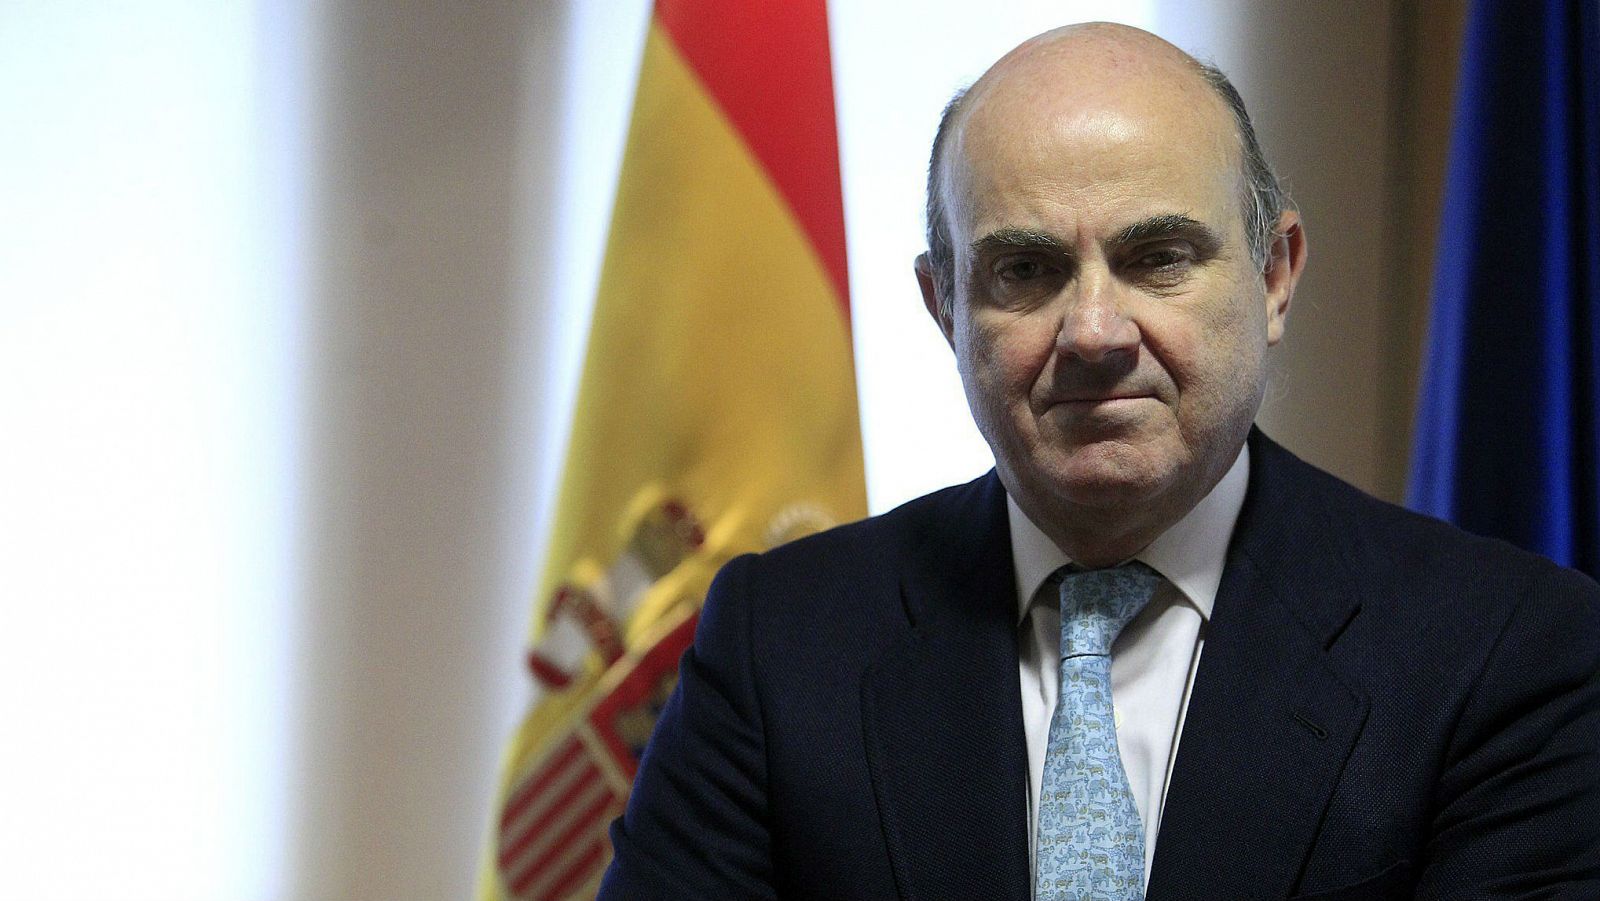  Las mañanas de RNE - De Guindos: "España está preparada para capear el corralito griego" - Escuchar ahora 